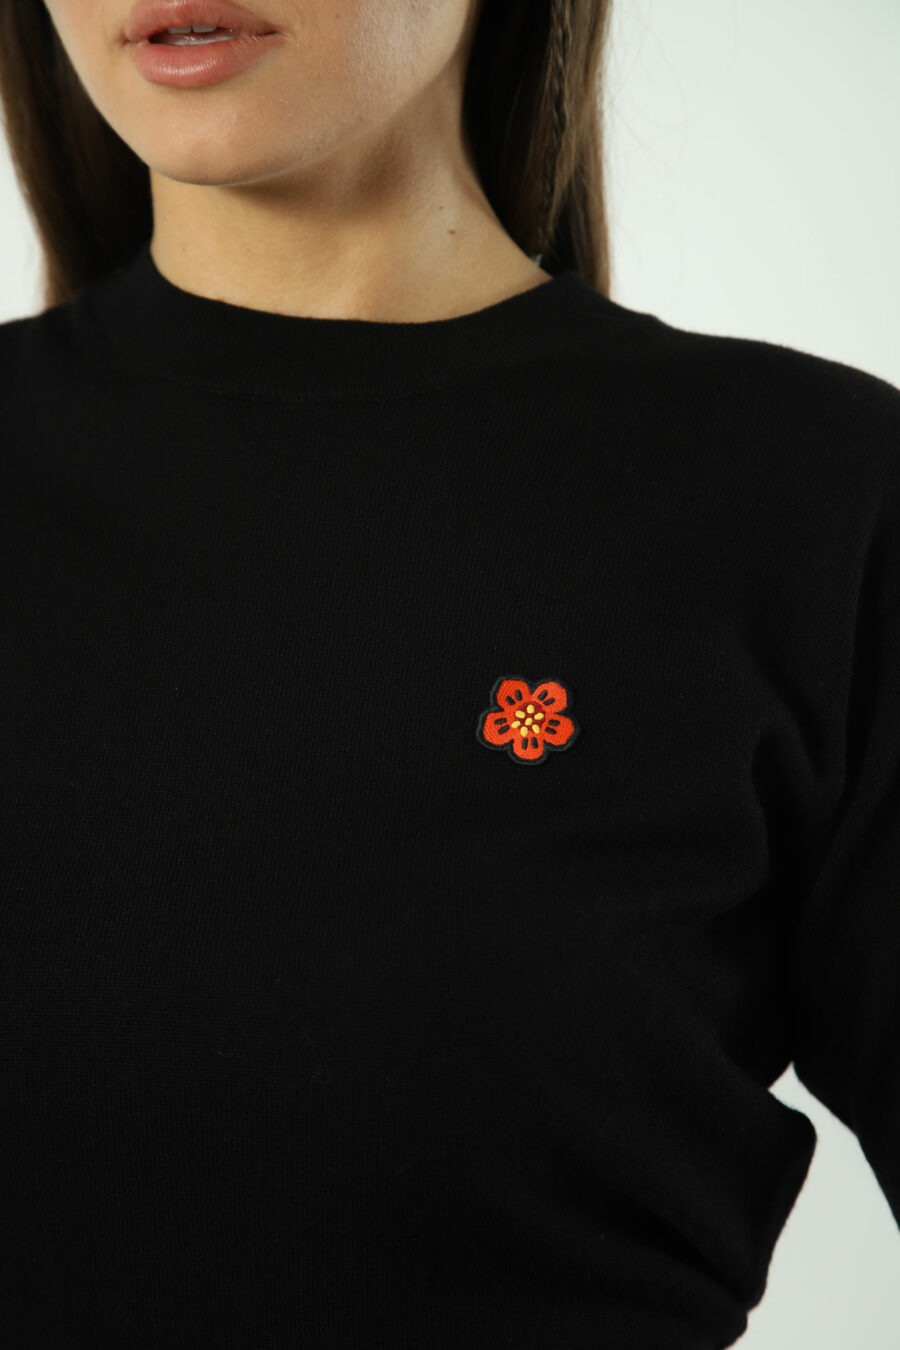 Schwarzer Pullover mit orangem Mini-Logo - Fotos 1297